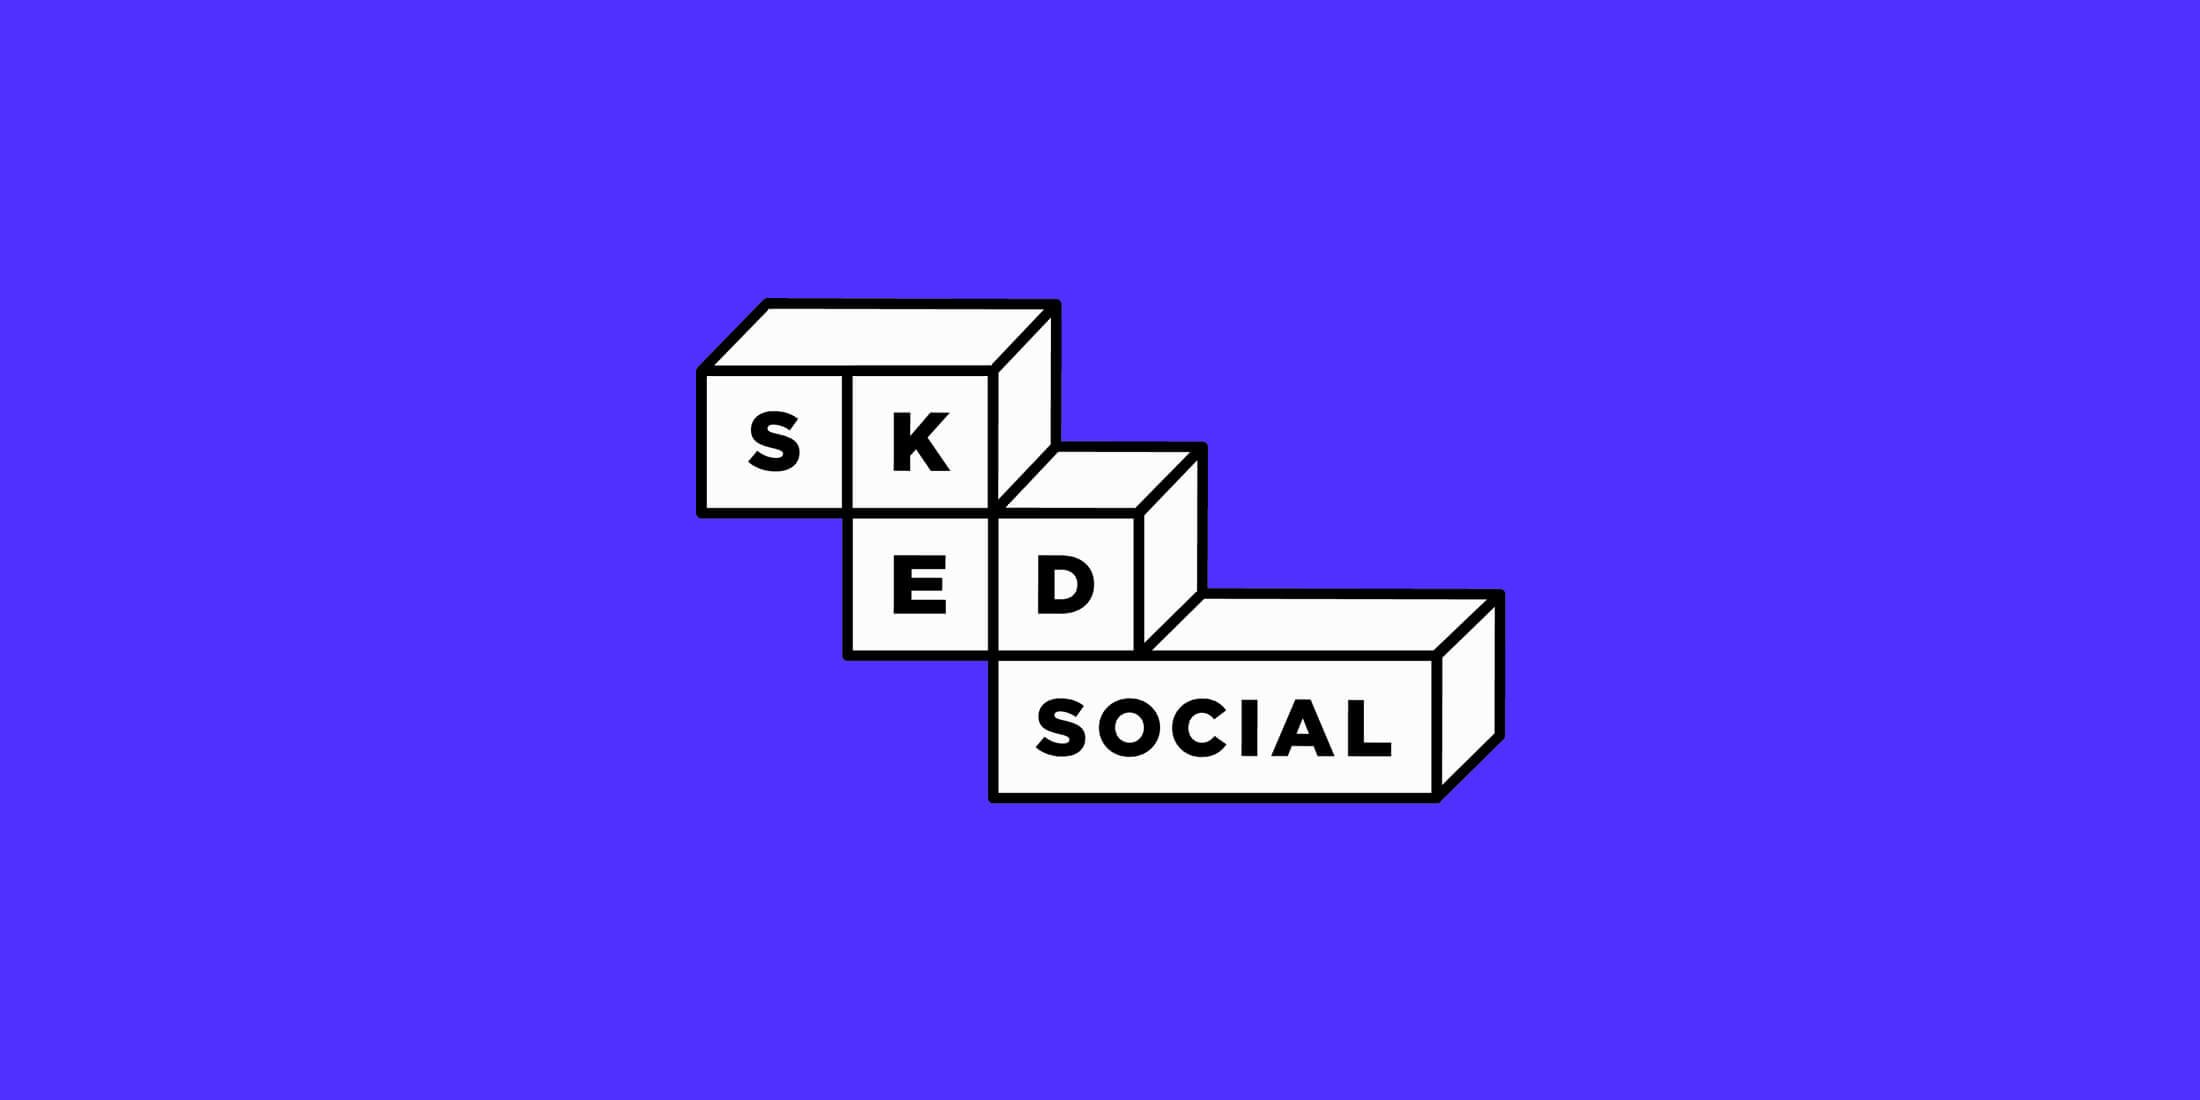 SKED Social logo on blue